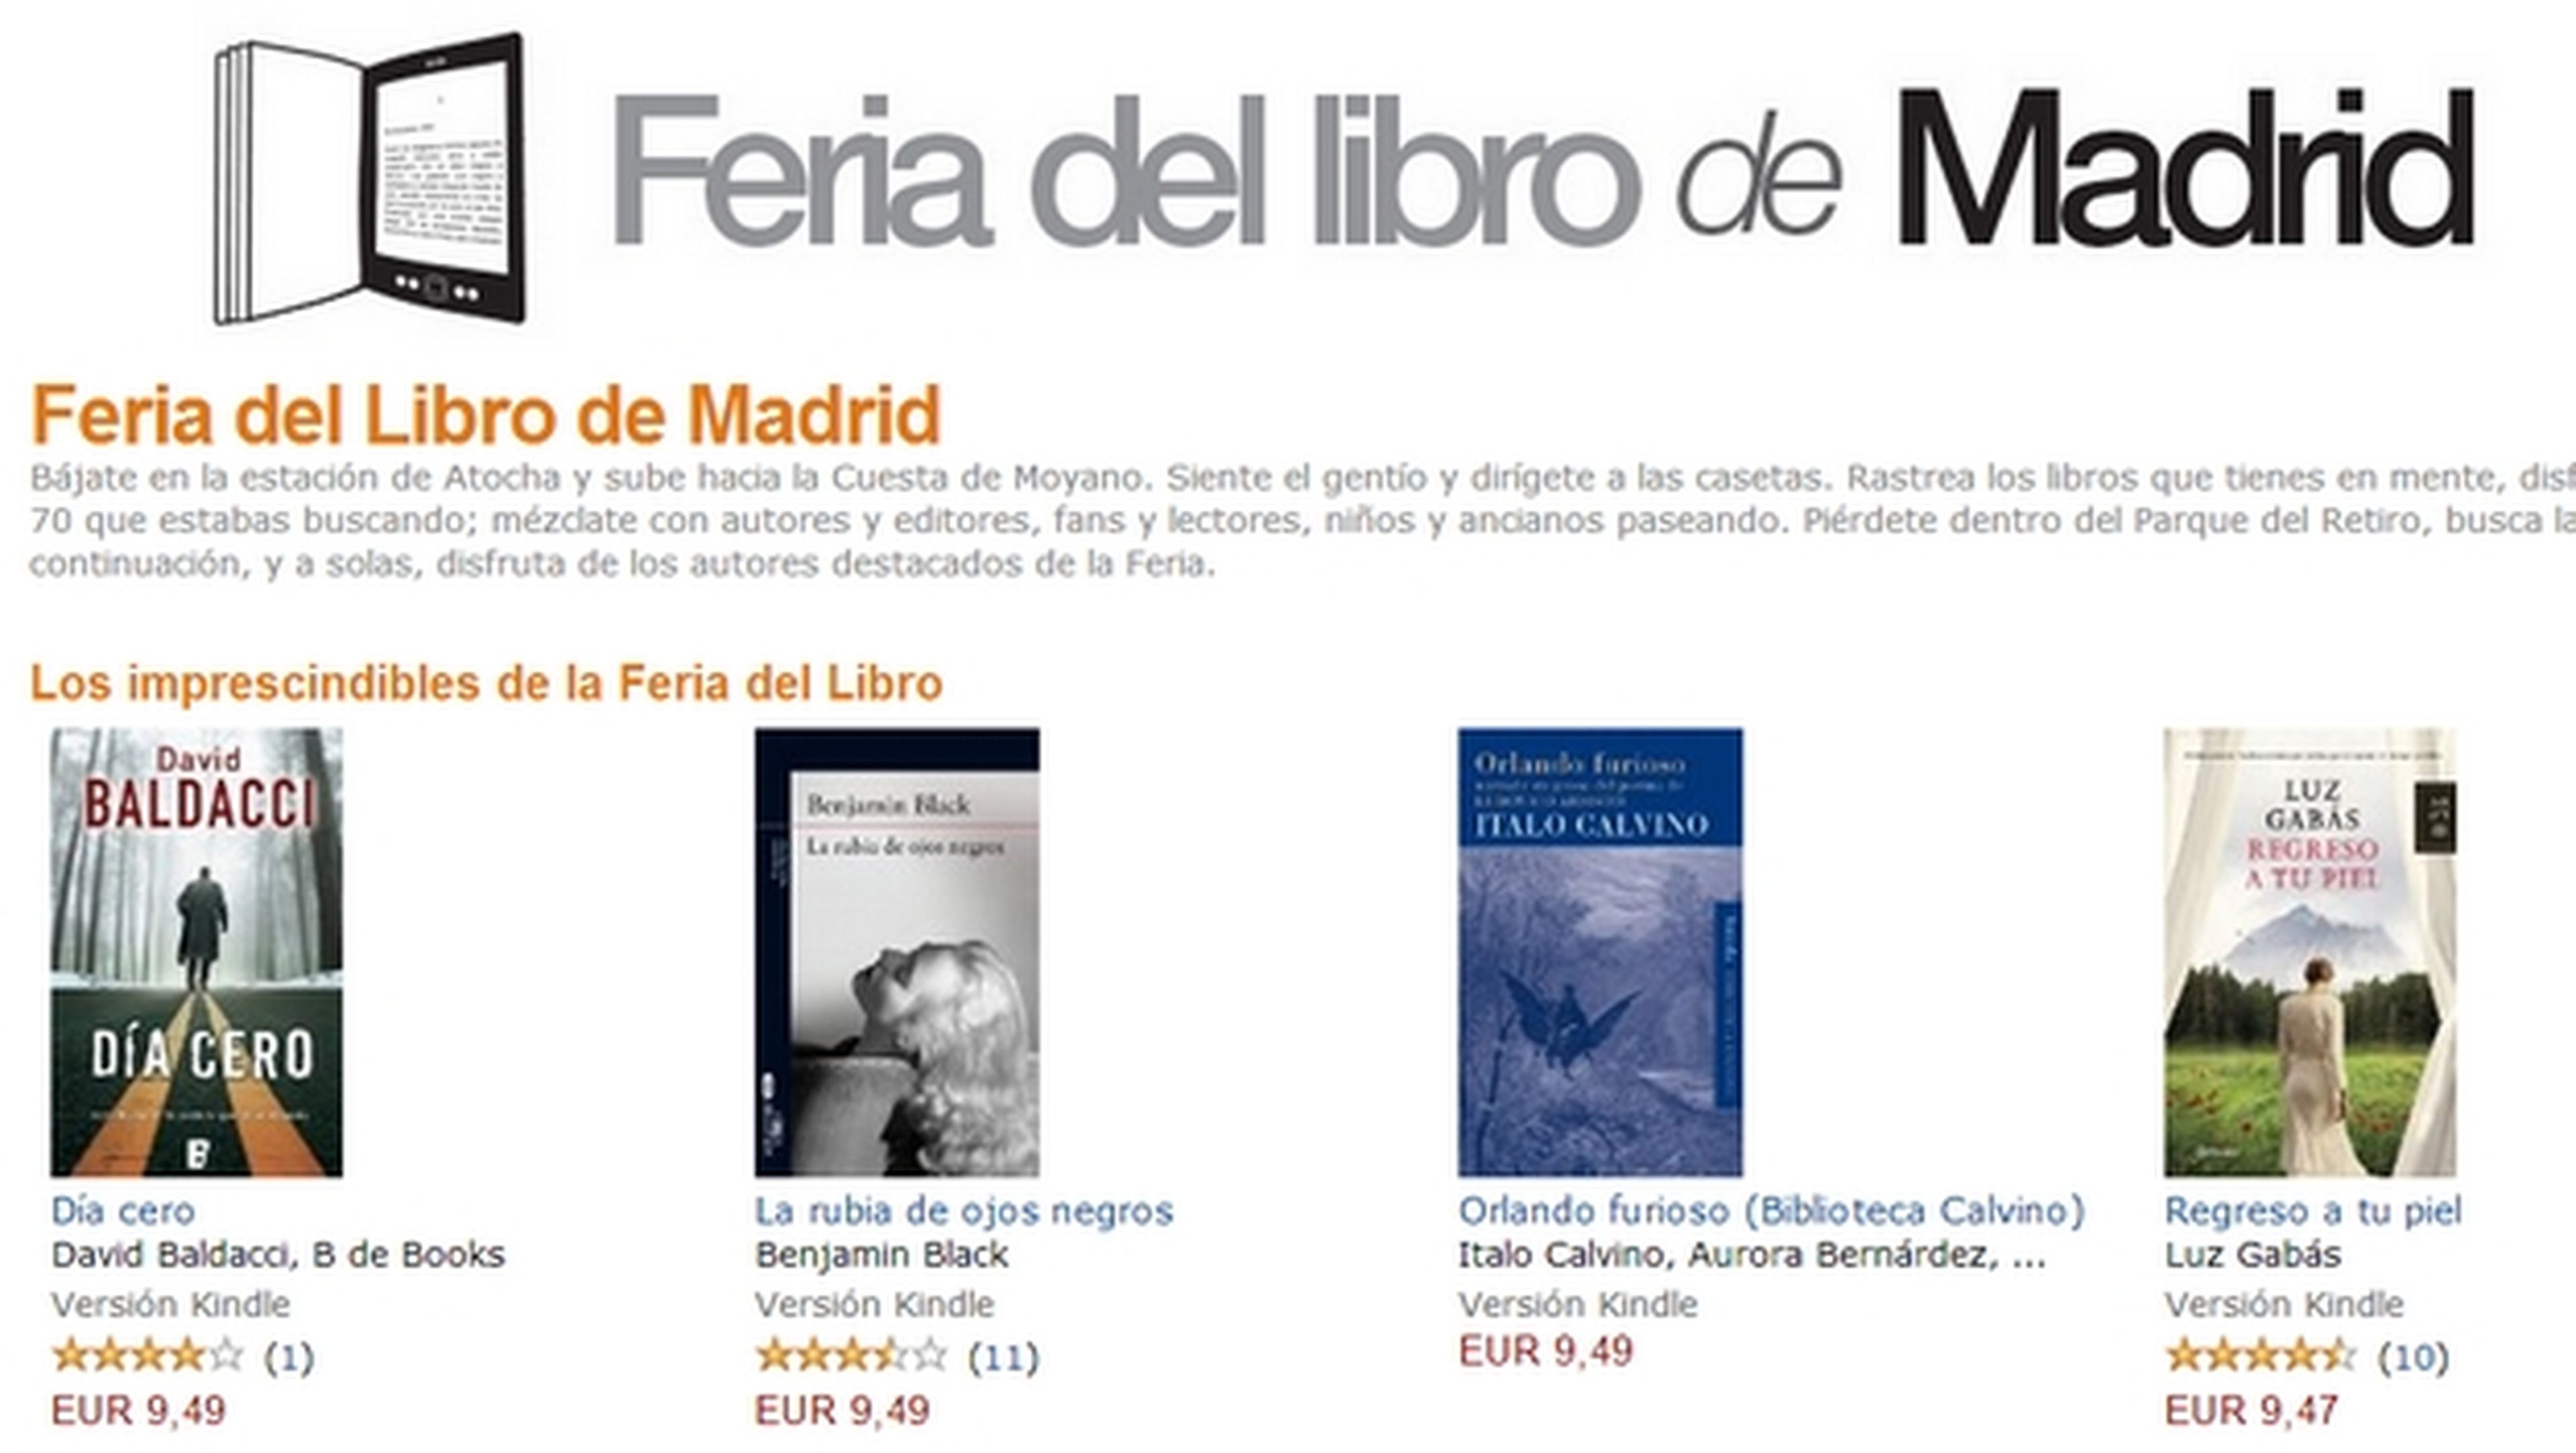 La Tienda Kindle de Amazon abre una sección dedicada la Feria del Libro de Madrid, con descuentos en ebooks.